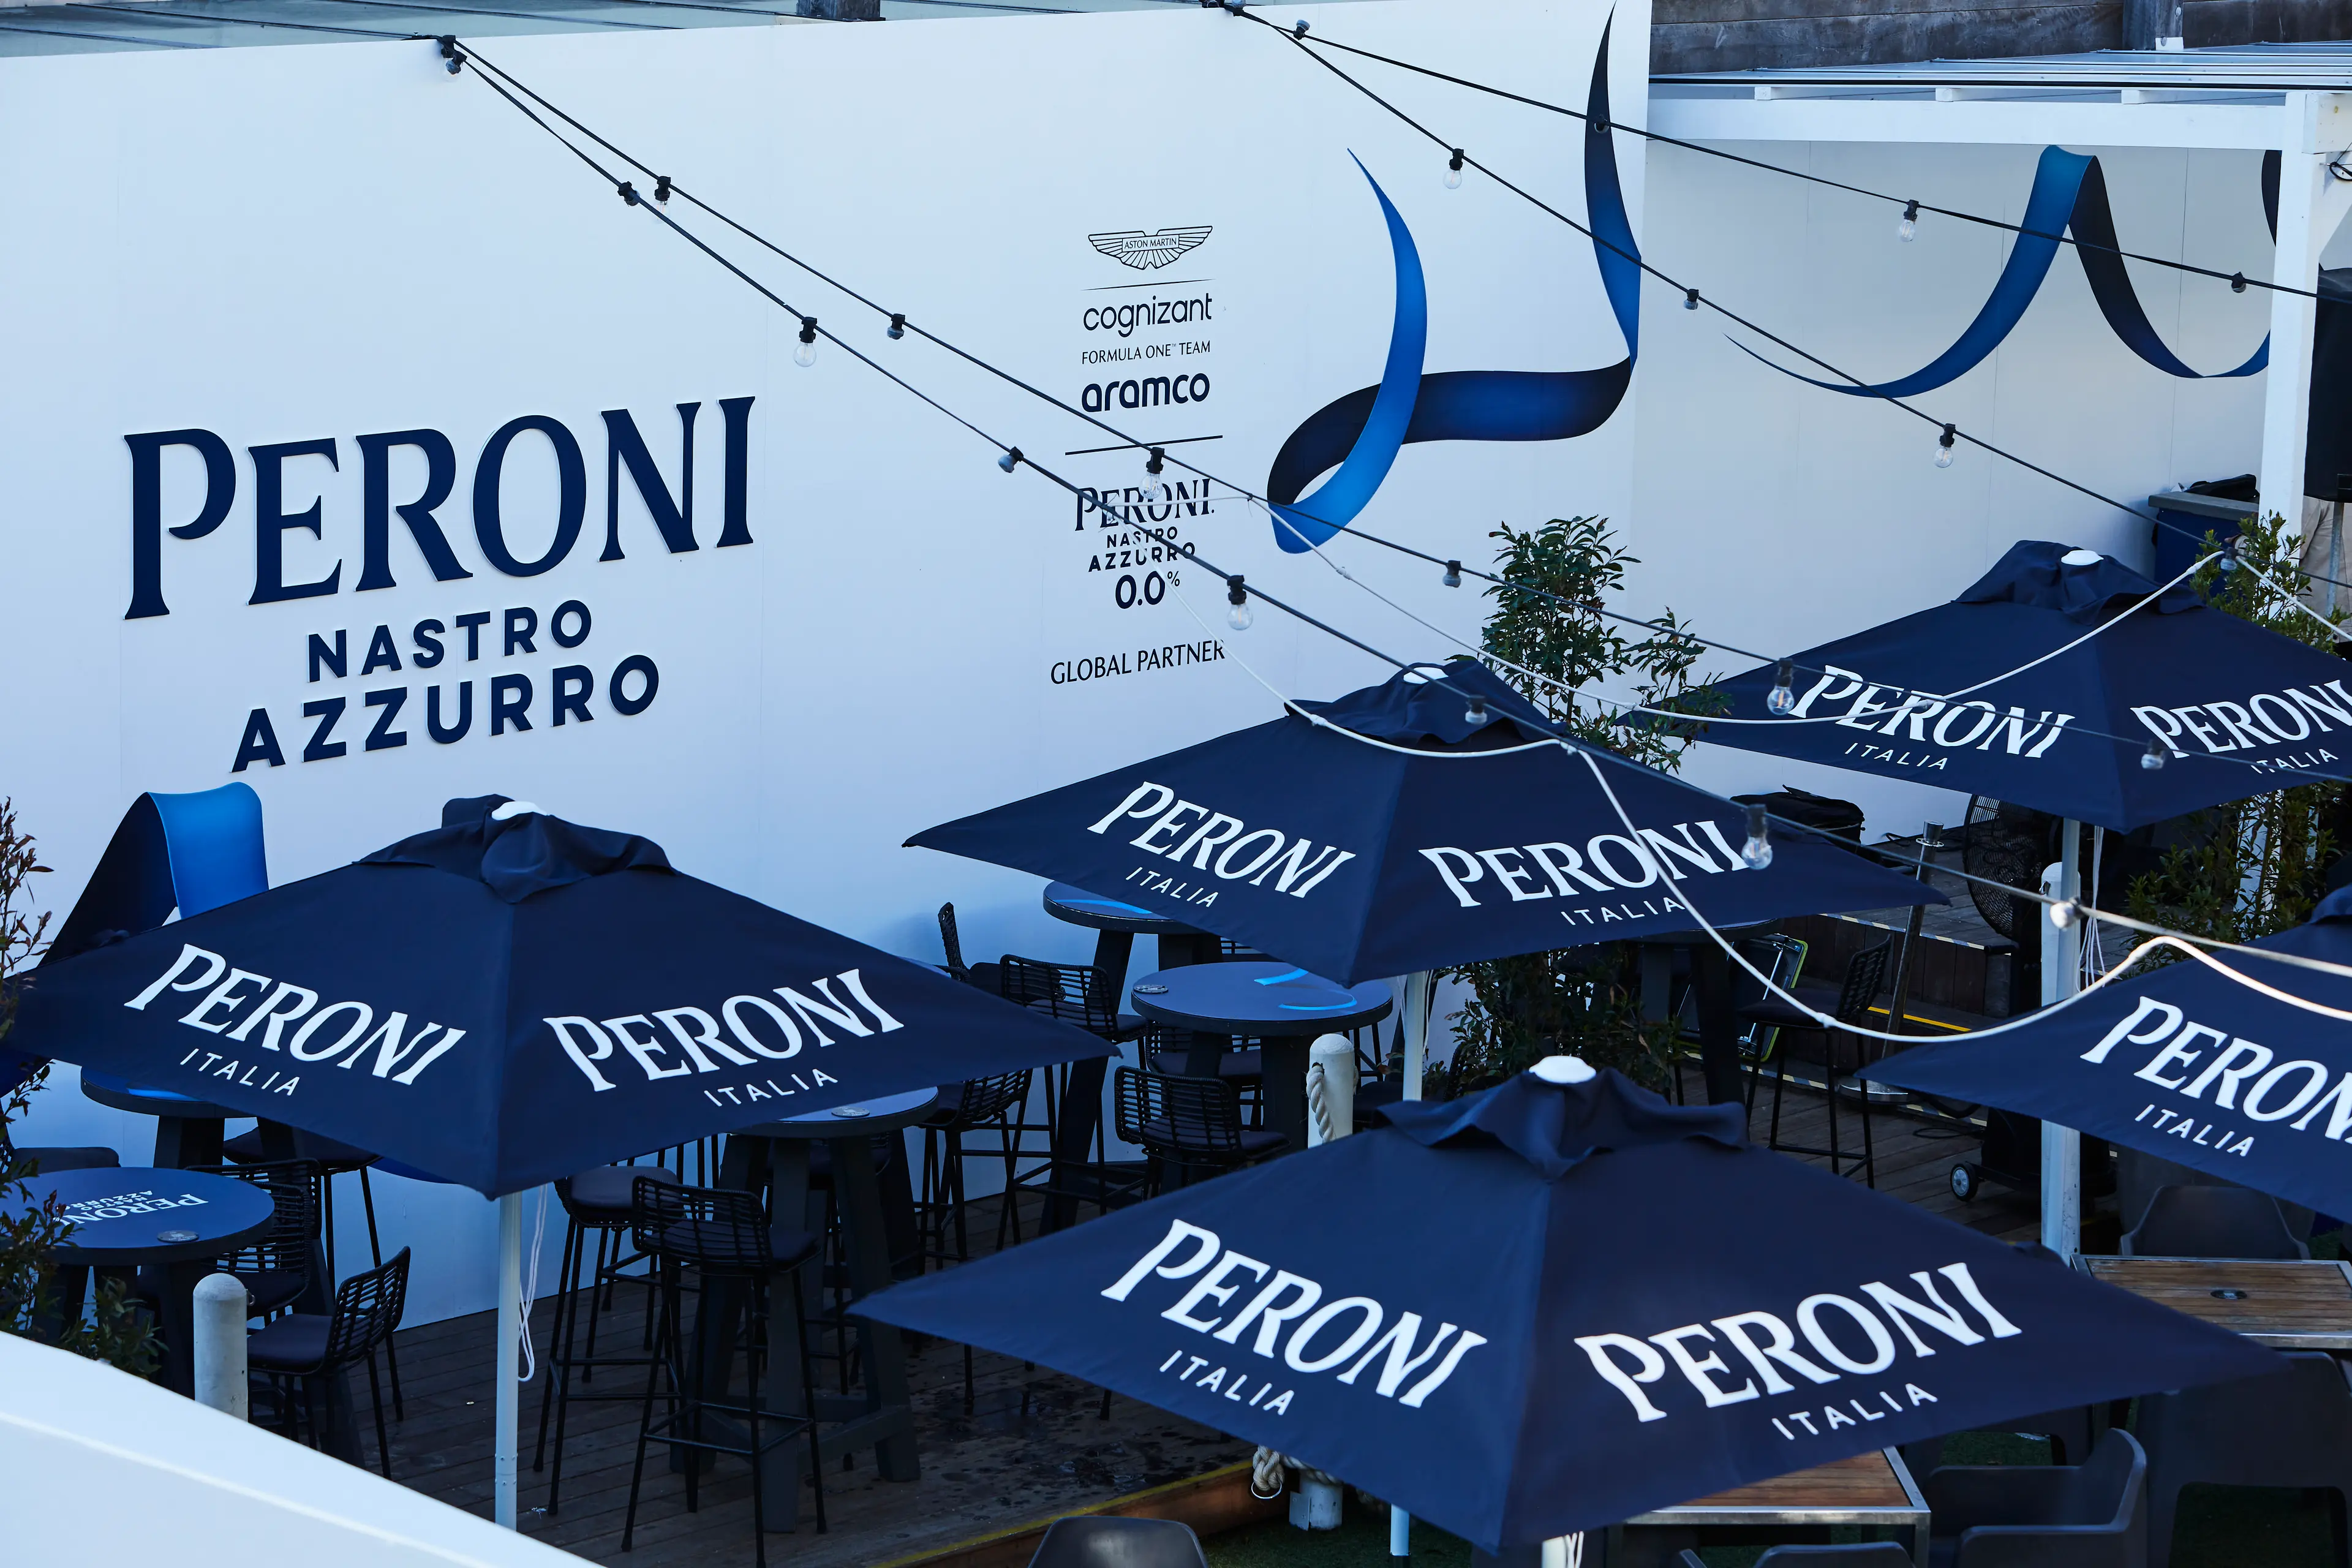 Il Pitstop - Peroni - on-premise marketing, brand activation - Republica, St Kilda, Victoria